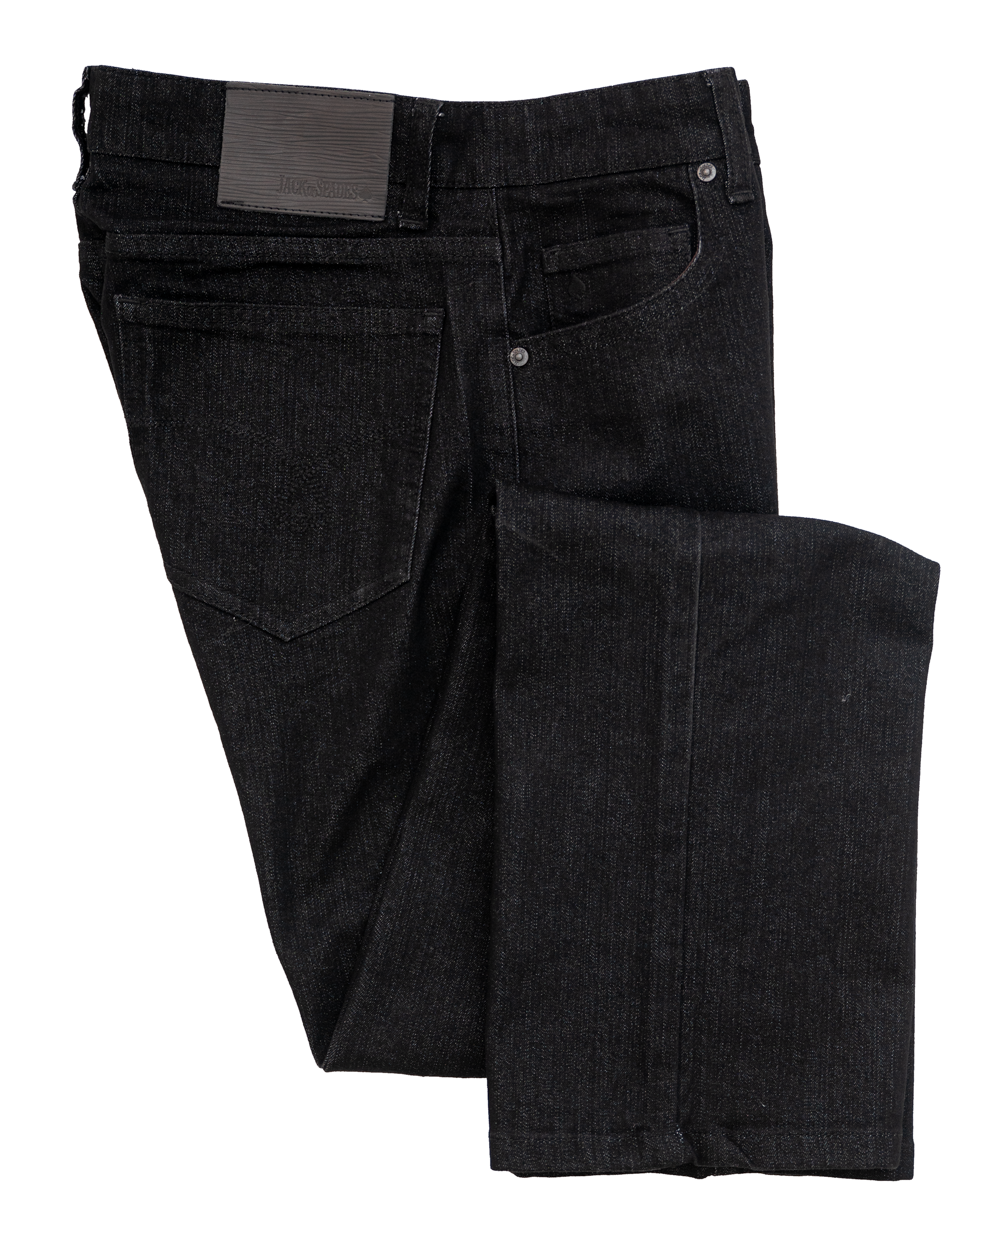 Clarke Gable black traditional five-patch pockets slim fit men's denim pants